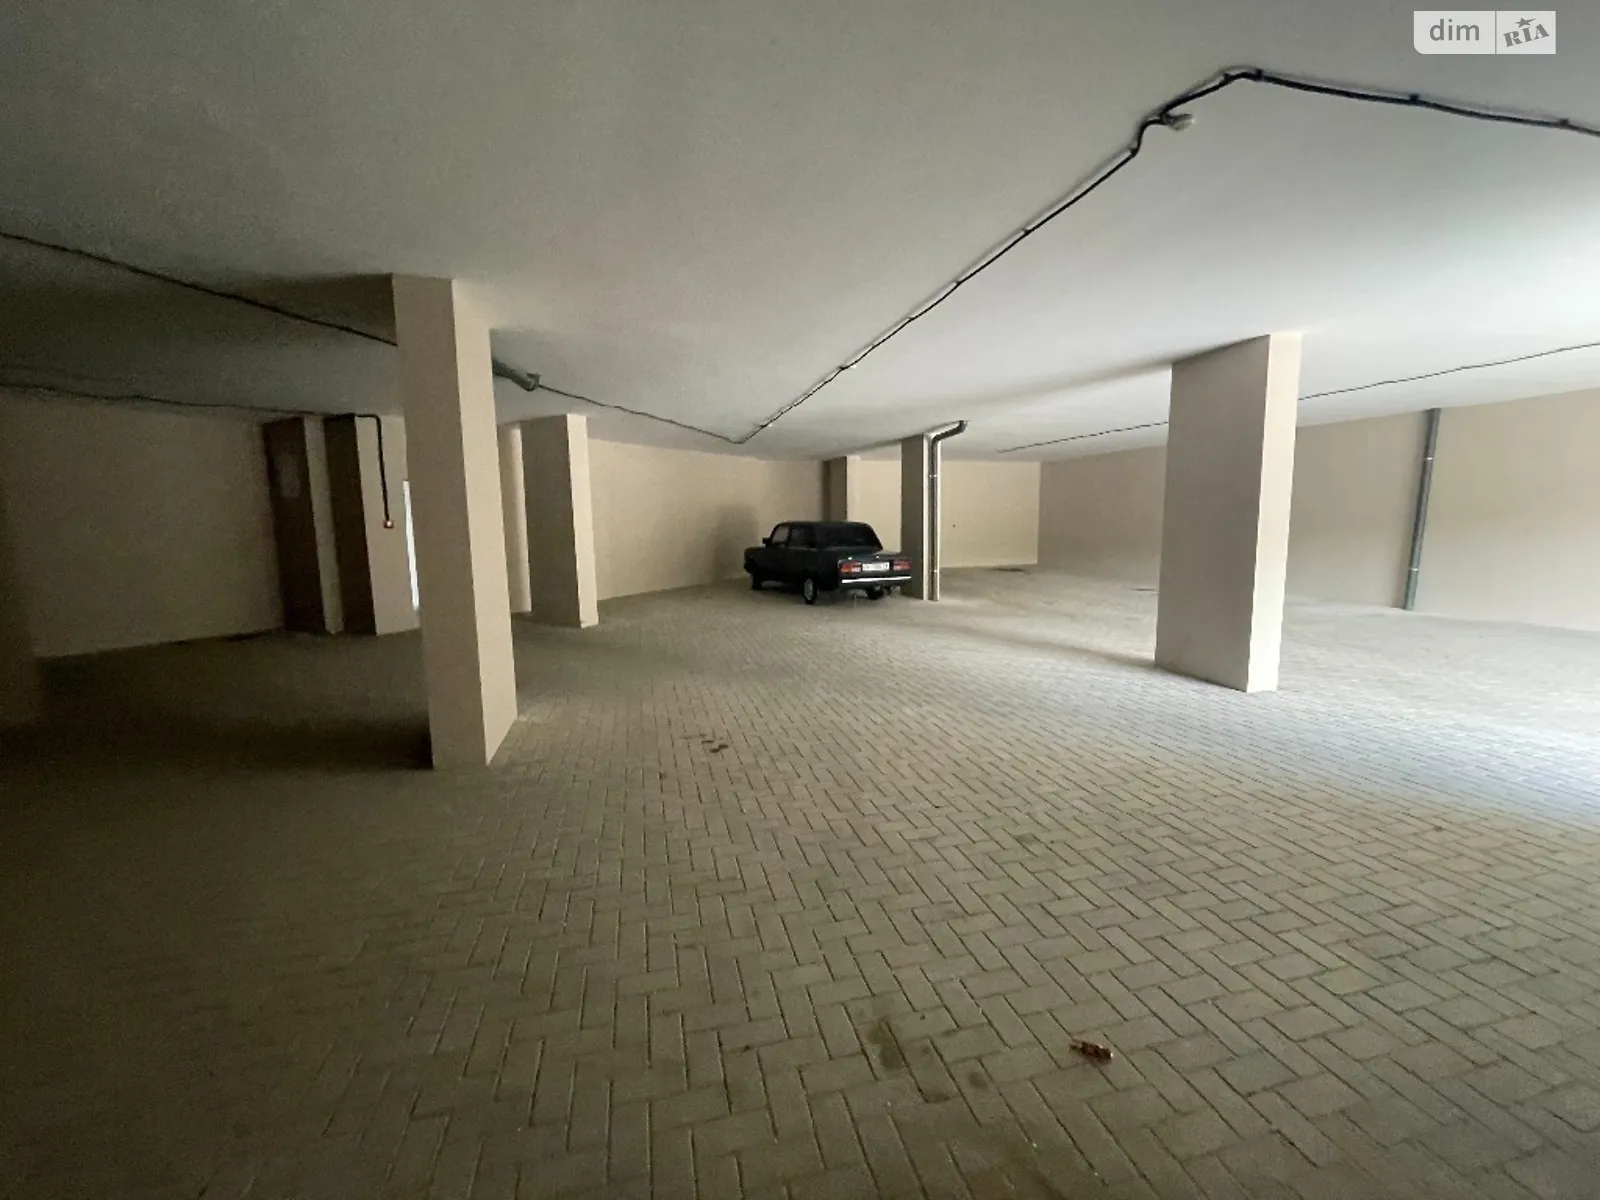 Продается подземный паркинг под легковое авто на 16.96 кв. м - фото 2